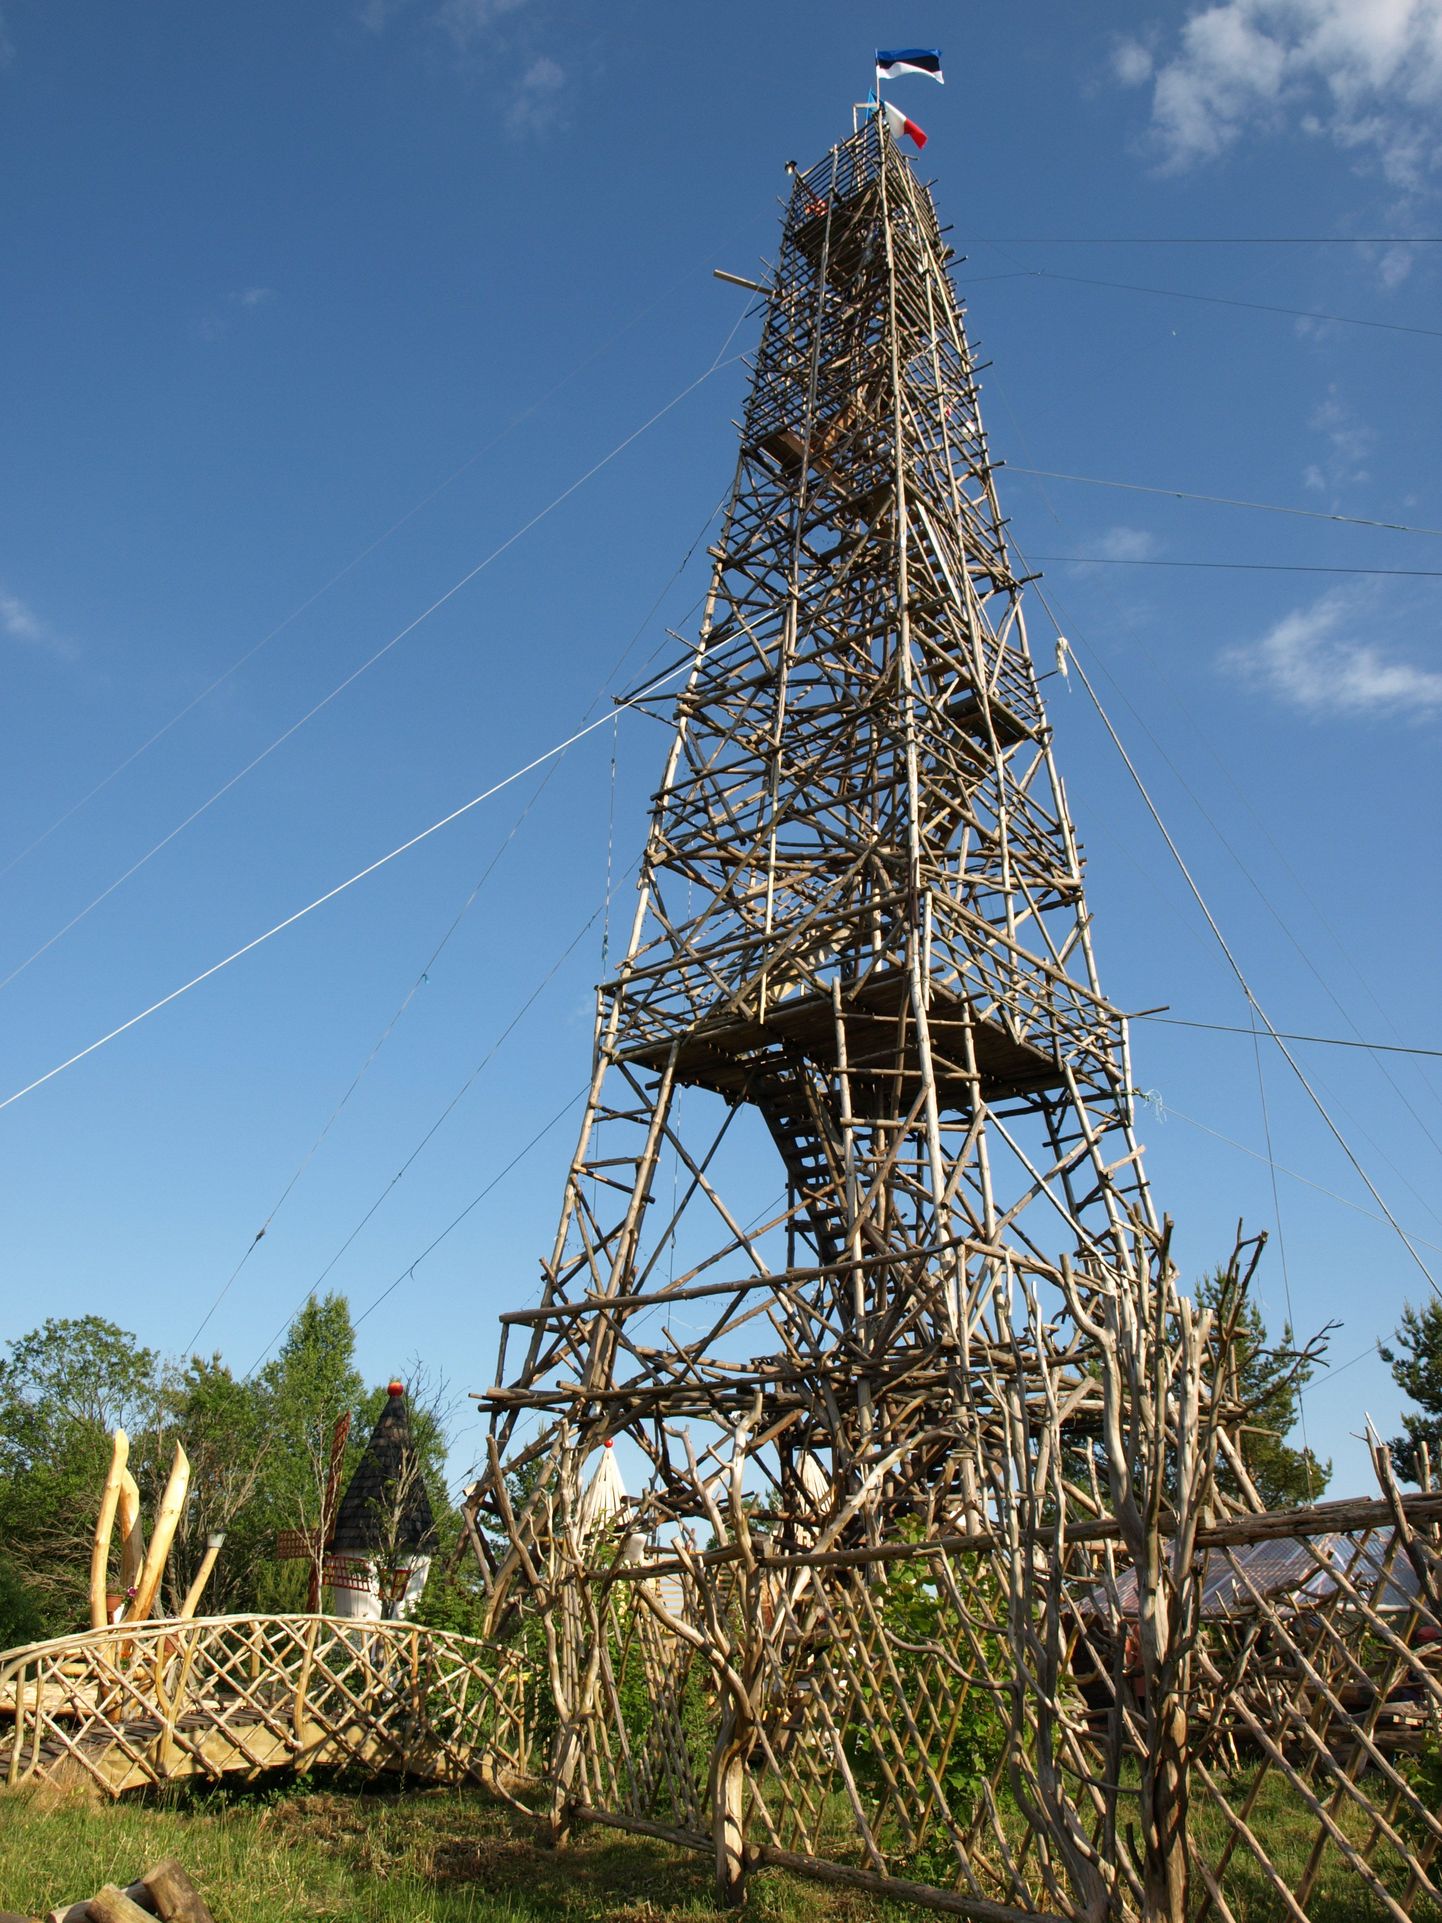 Копия Эйфелевой башни, построенная Алликсоо весной 2008 года.